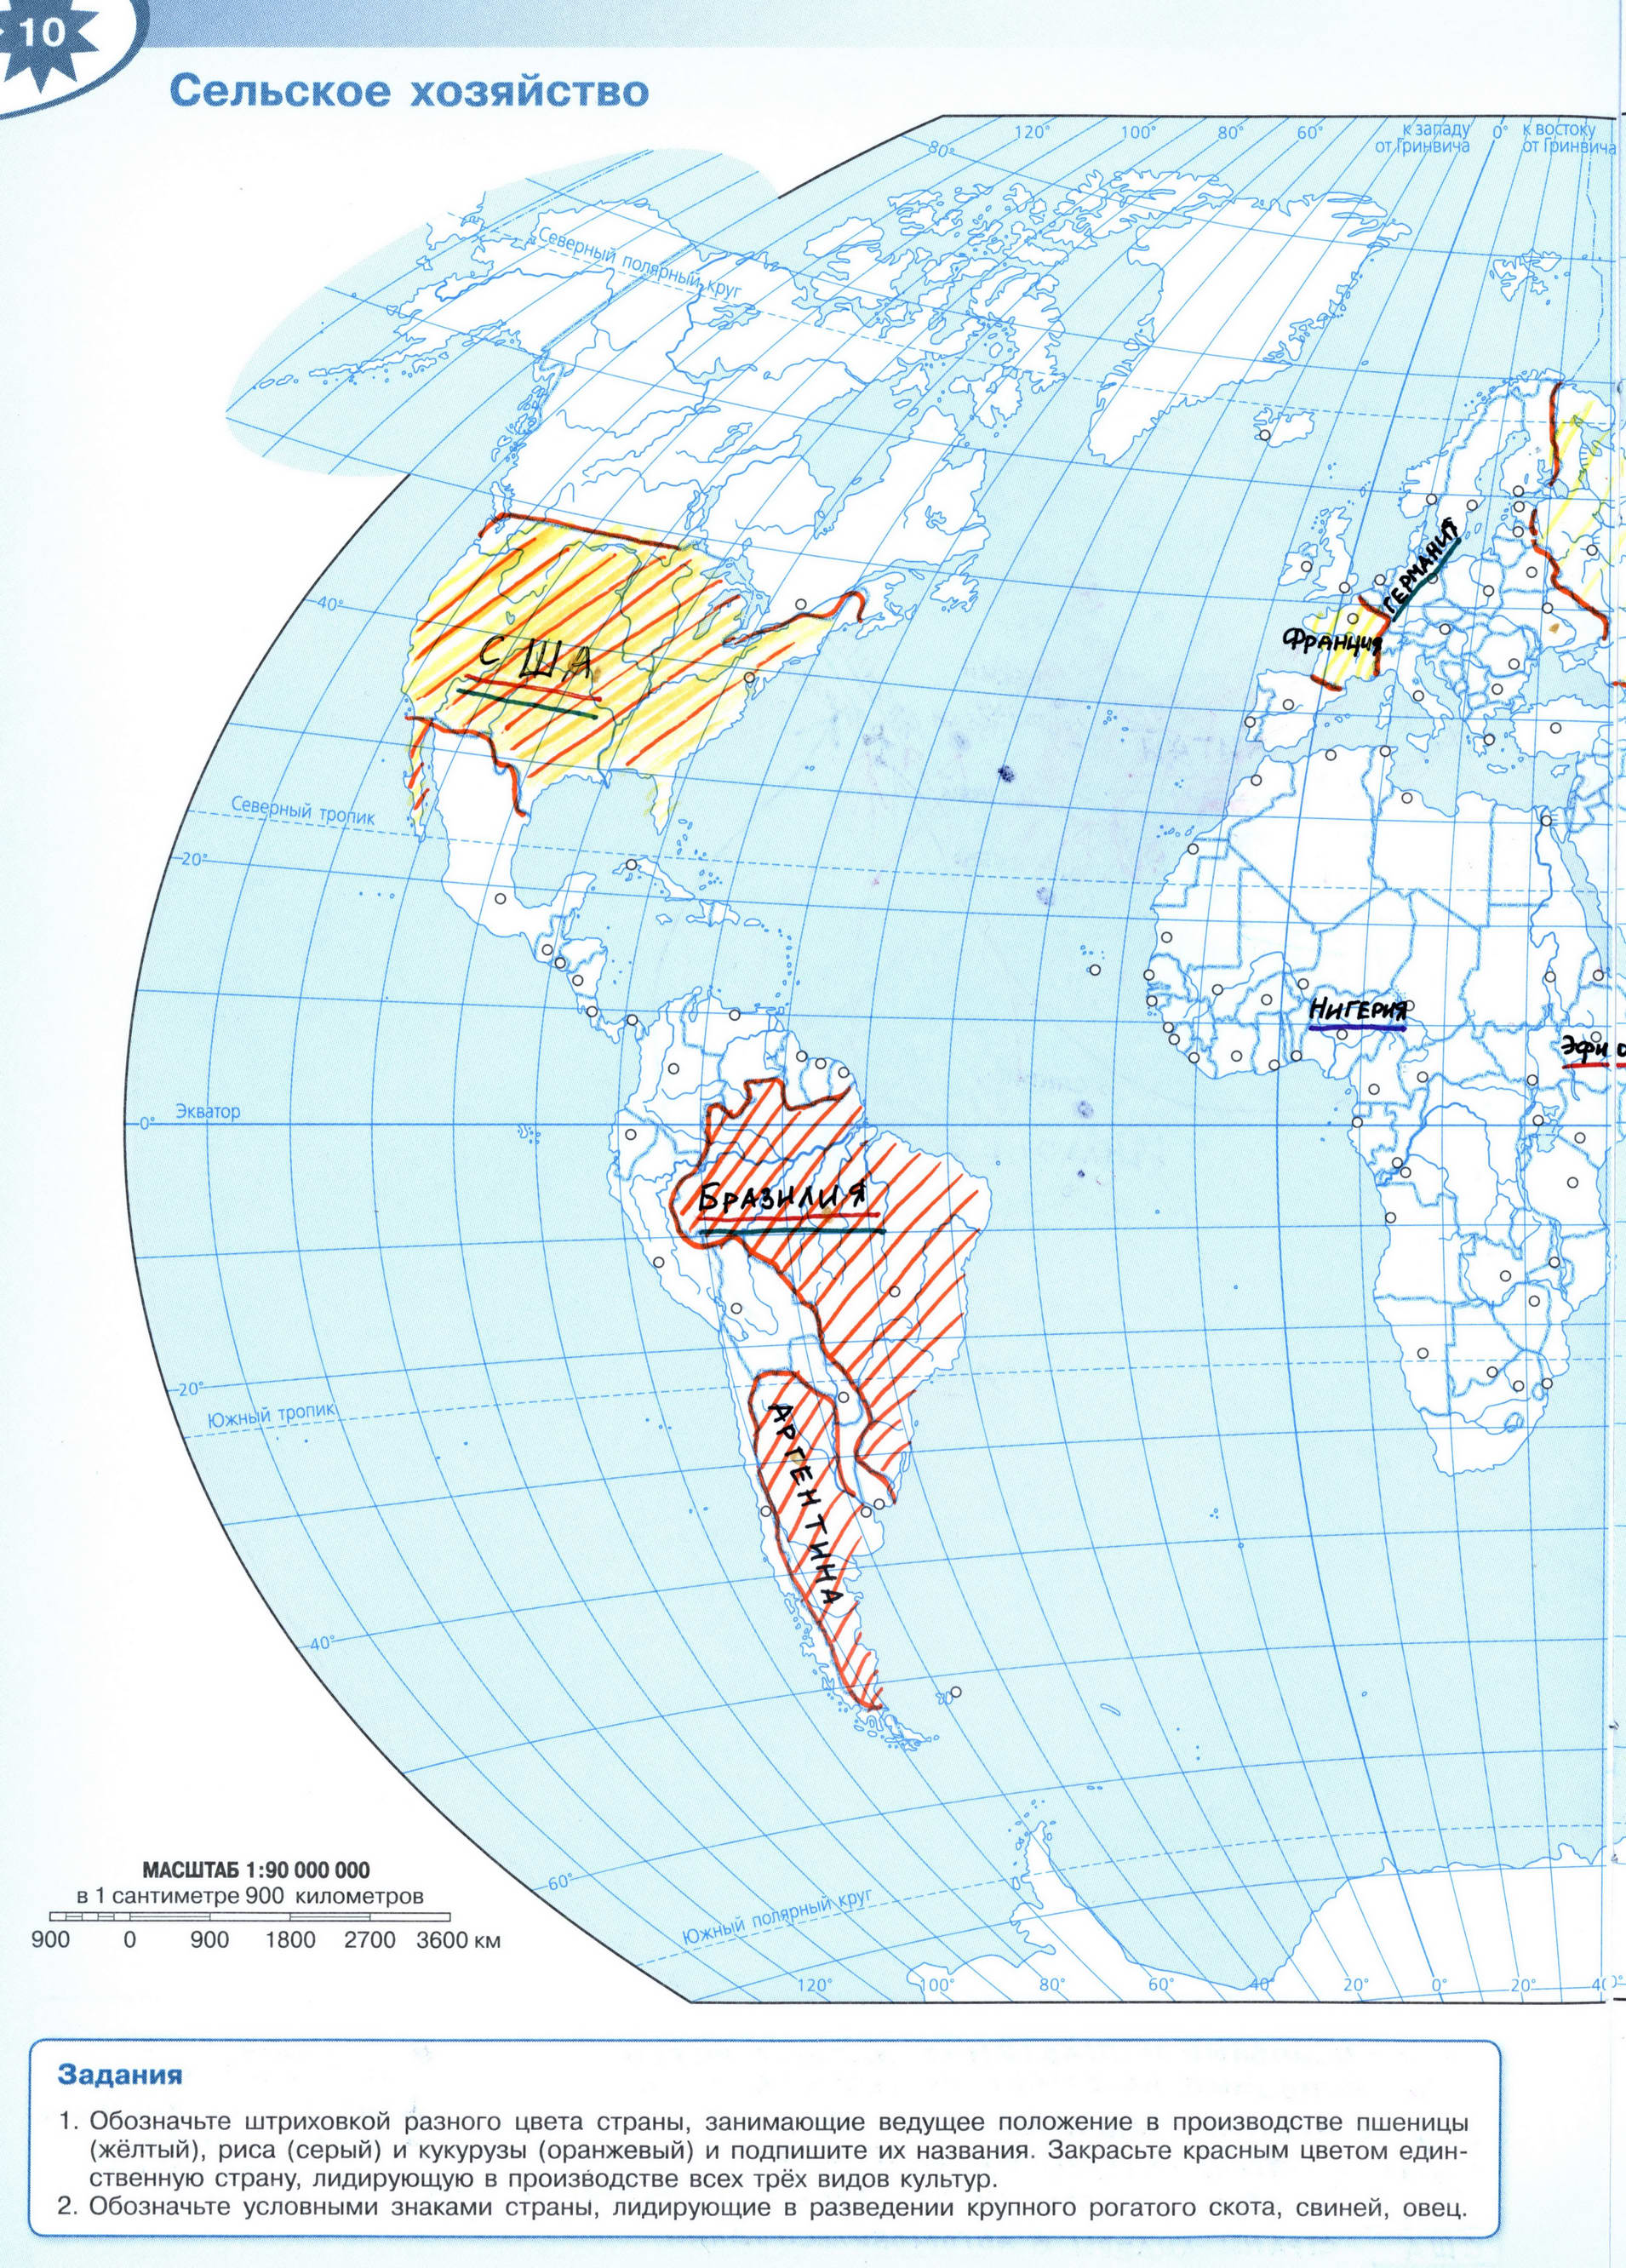 Сельское хозяйство мира ГДЗ контурная карта